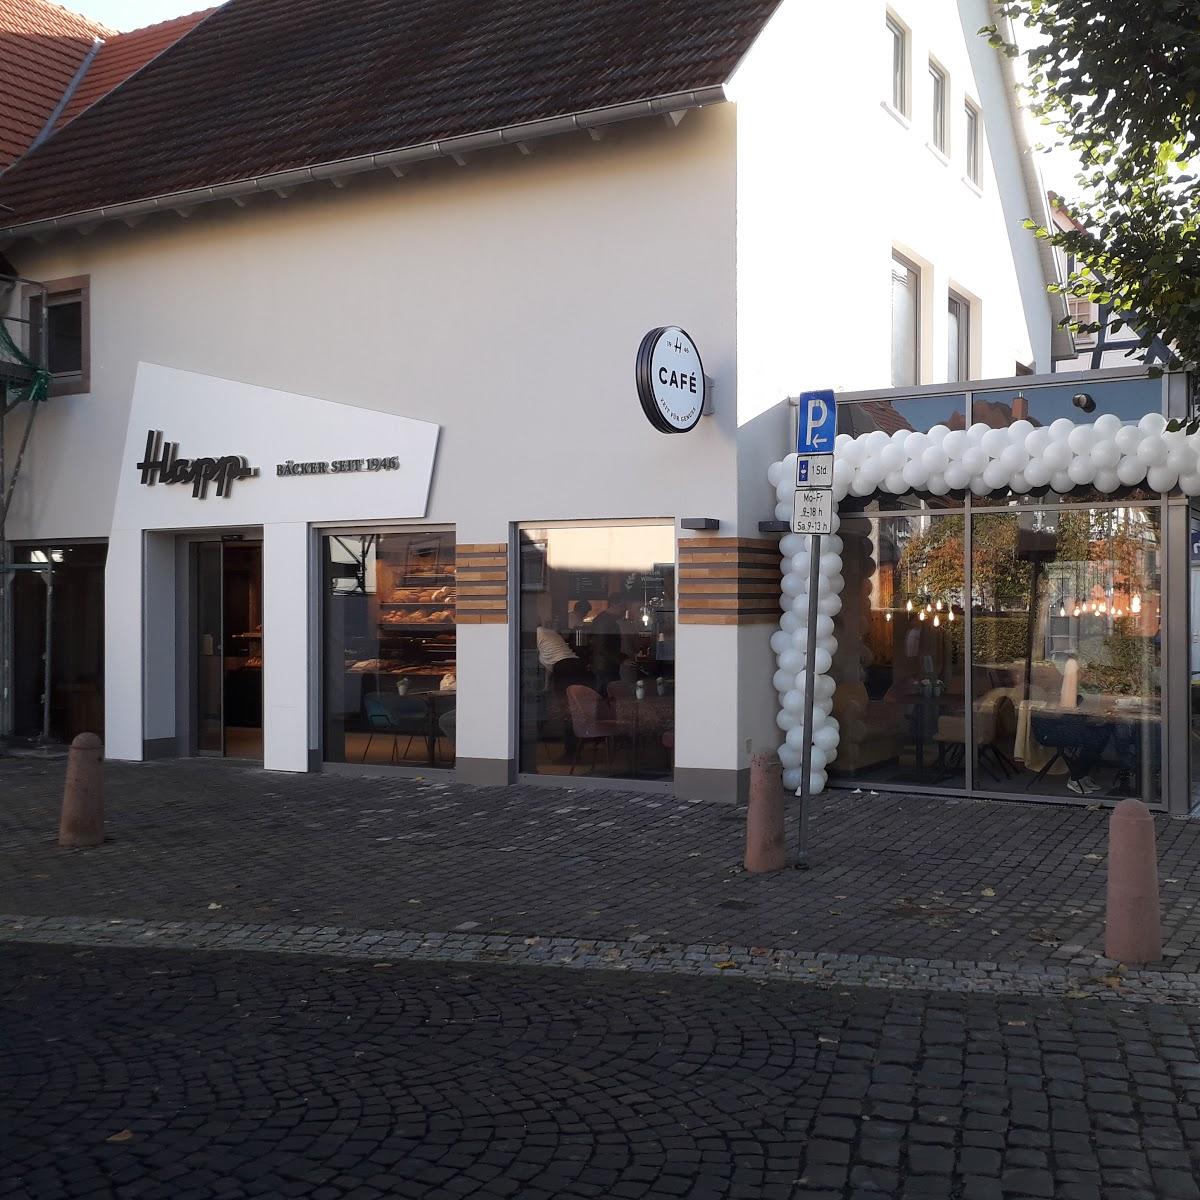 Restaurant "Bäckerei Happ GmbH & Co. KG" in Bad Soden-Salmünster